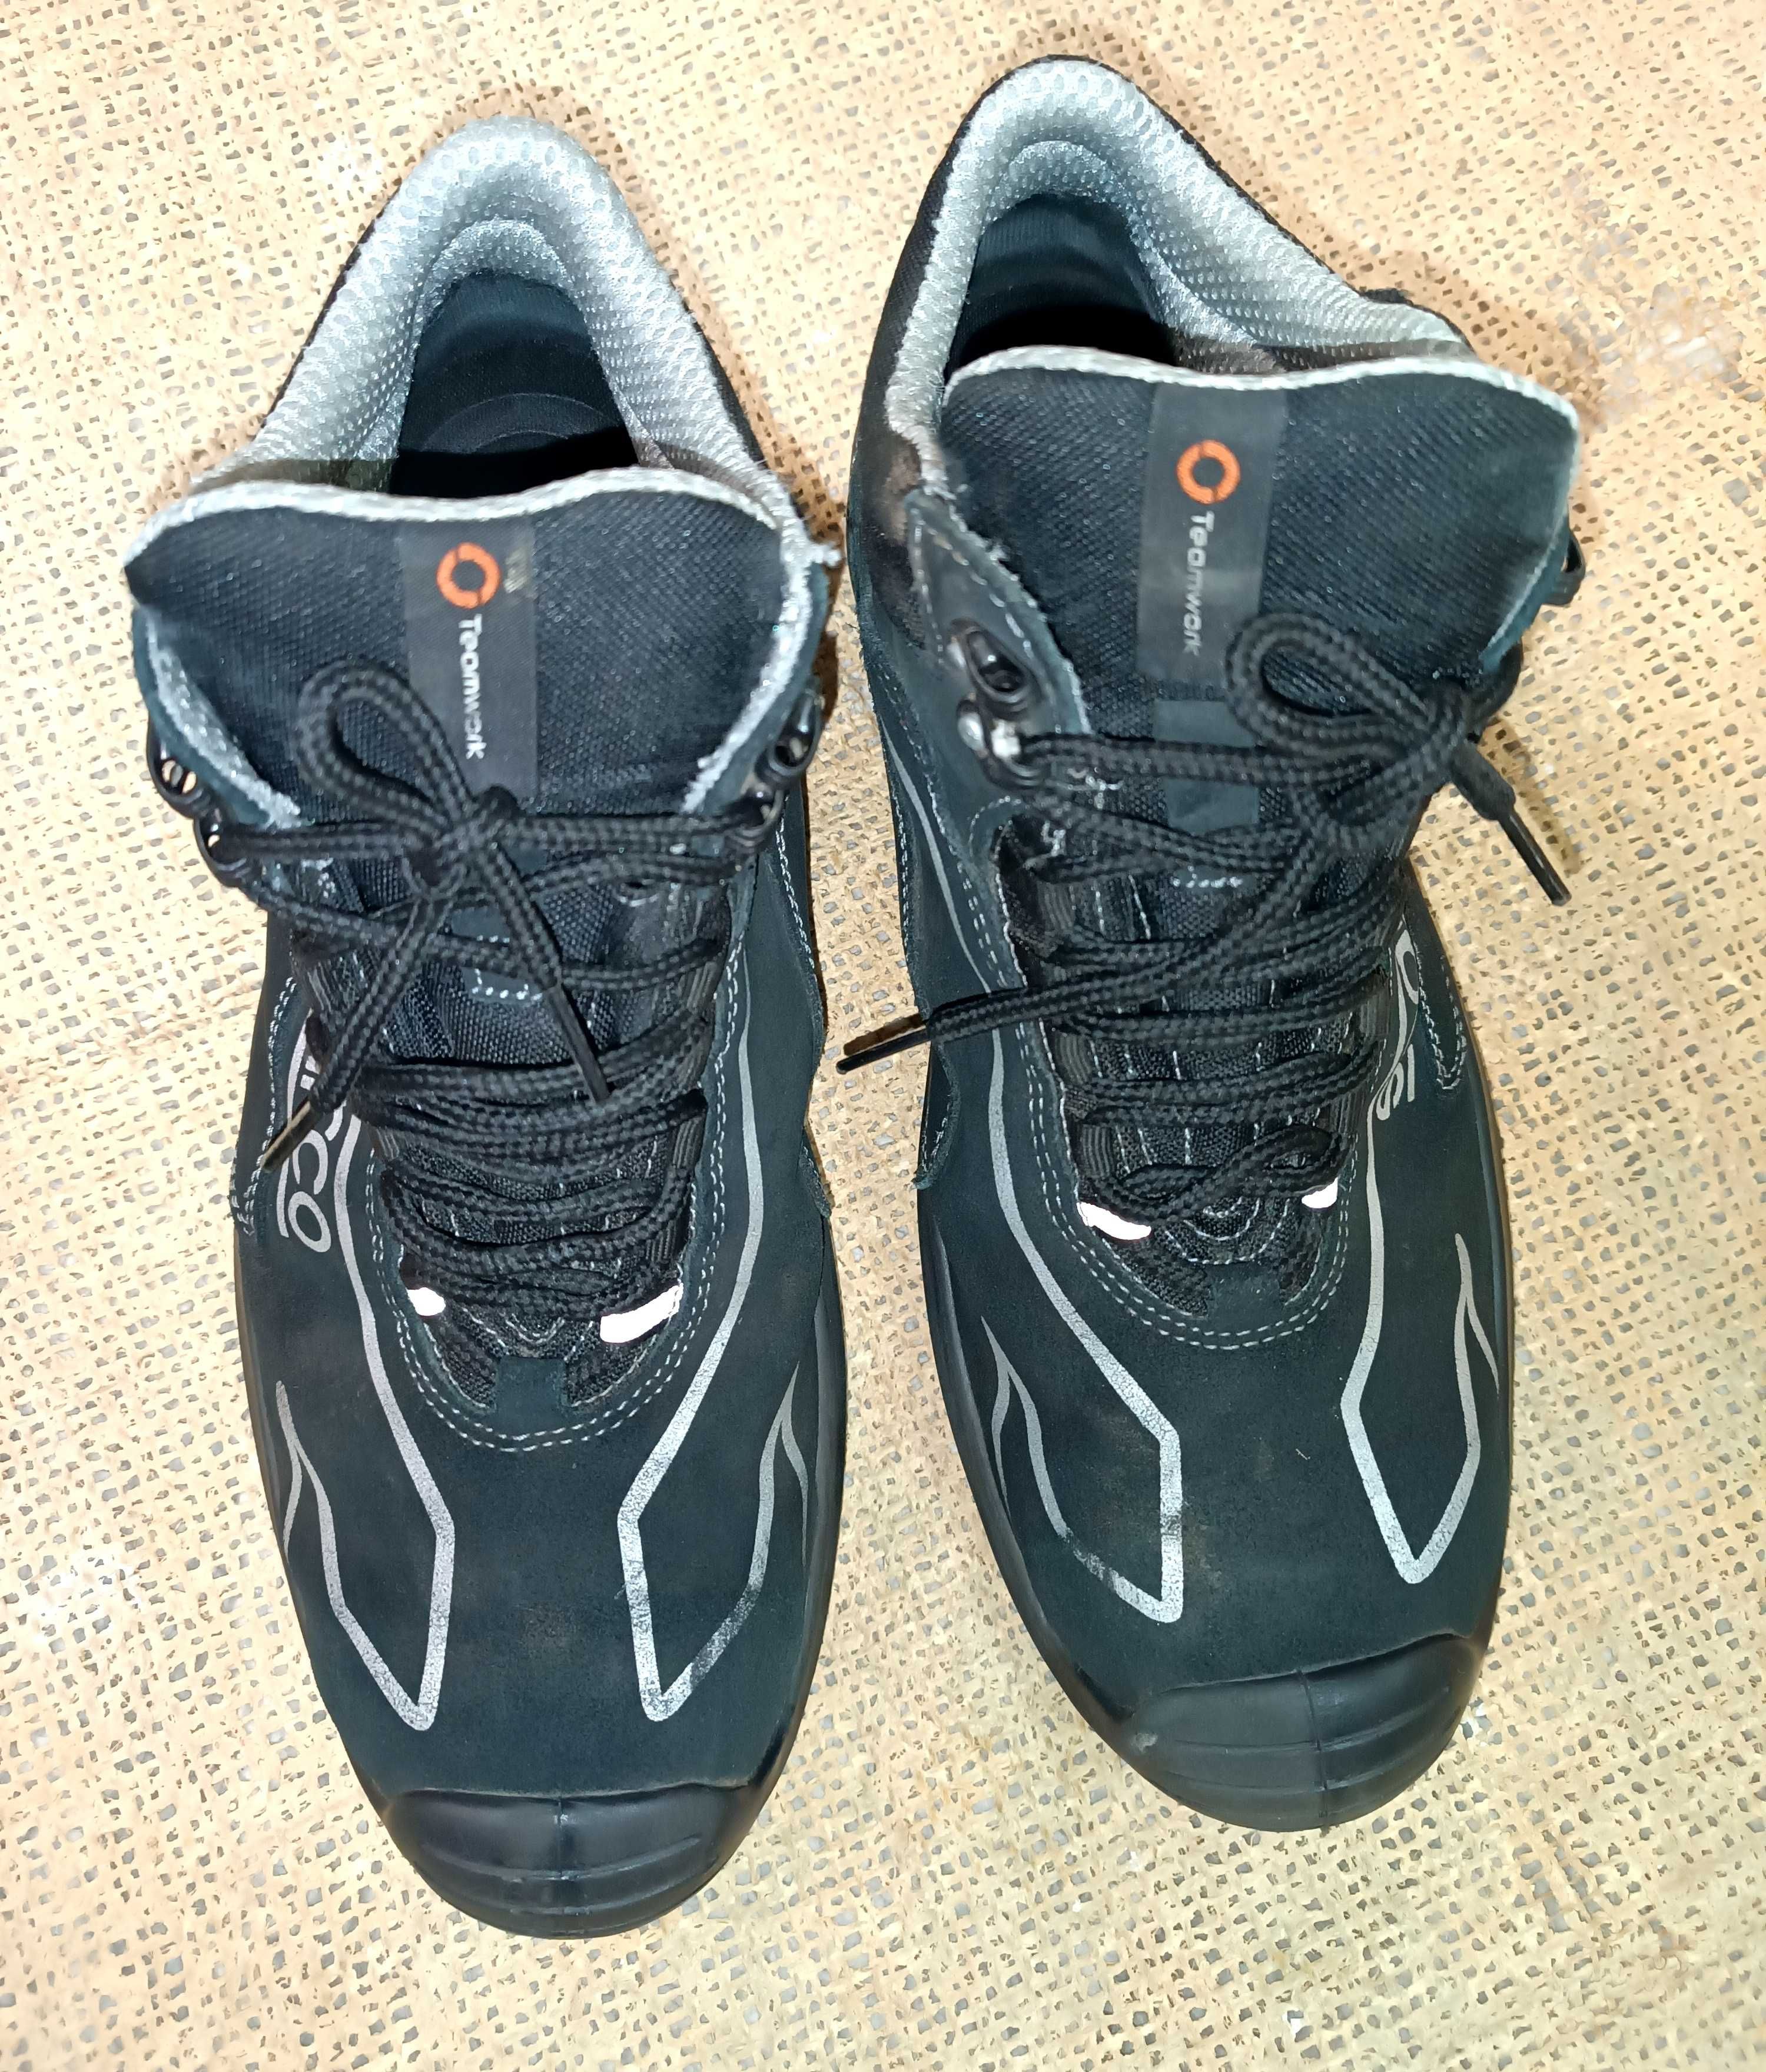 Кроссовки Sparco Италия кожаные трекинговые спец обувь 44 размер